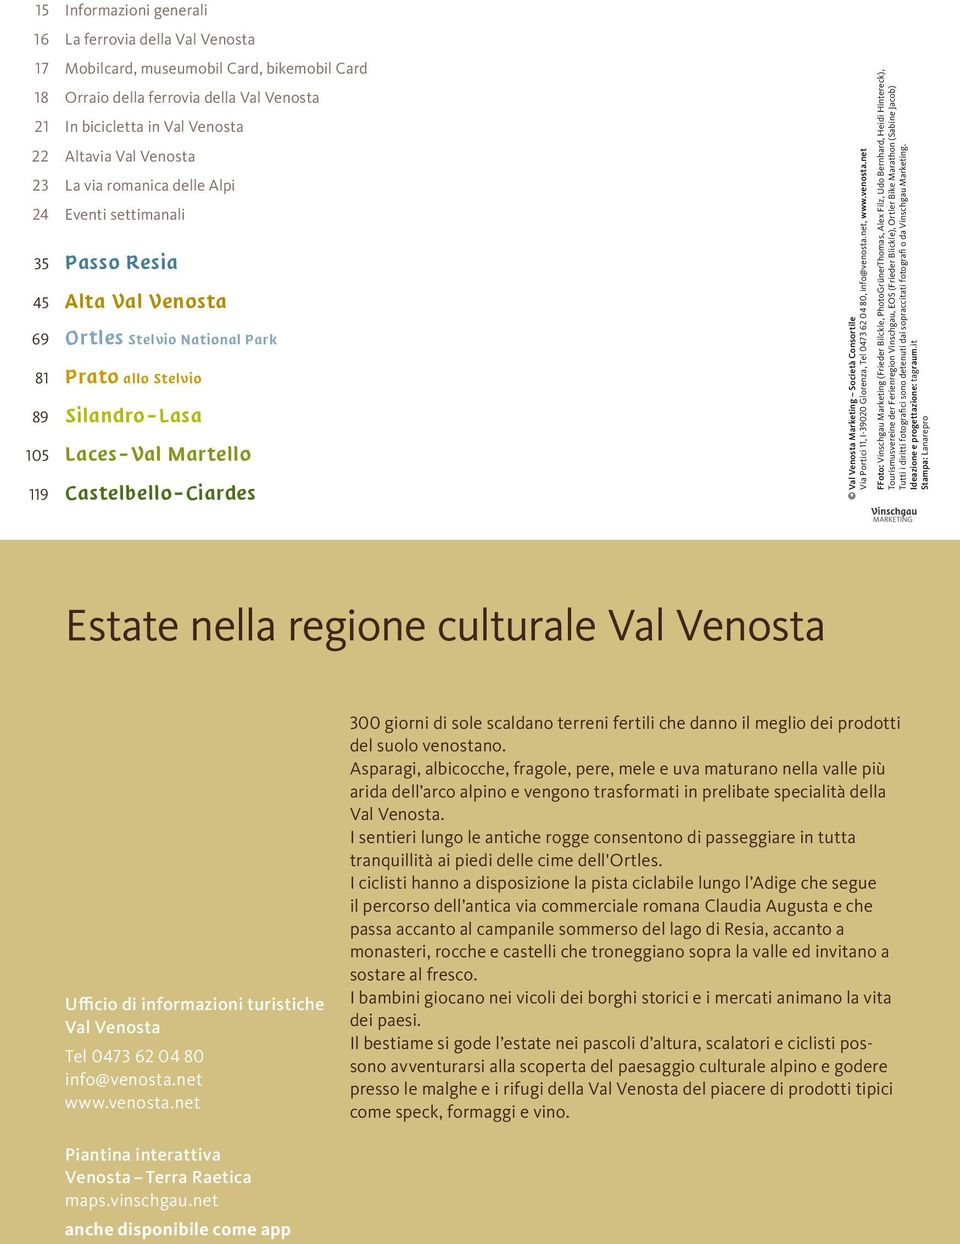 Castelbello Ciardes Val Venosta Marketing Società Consortile Via Portici 11, I-39020 Glorenza, Tel 0473 62 04 80, info@venosta.